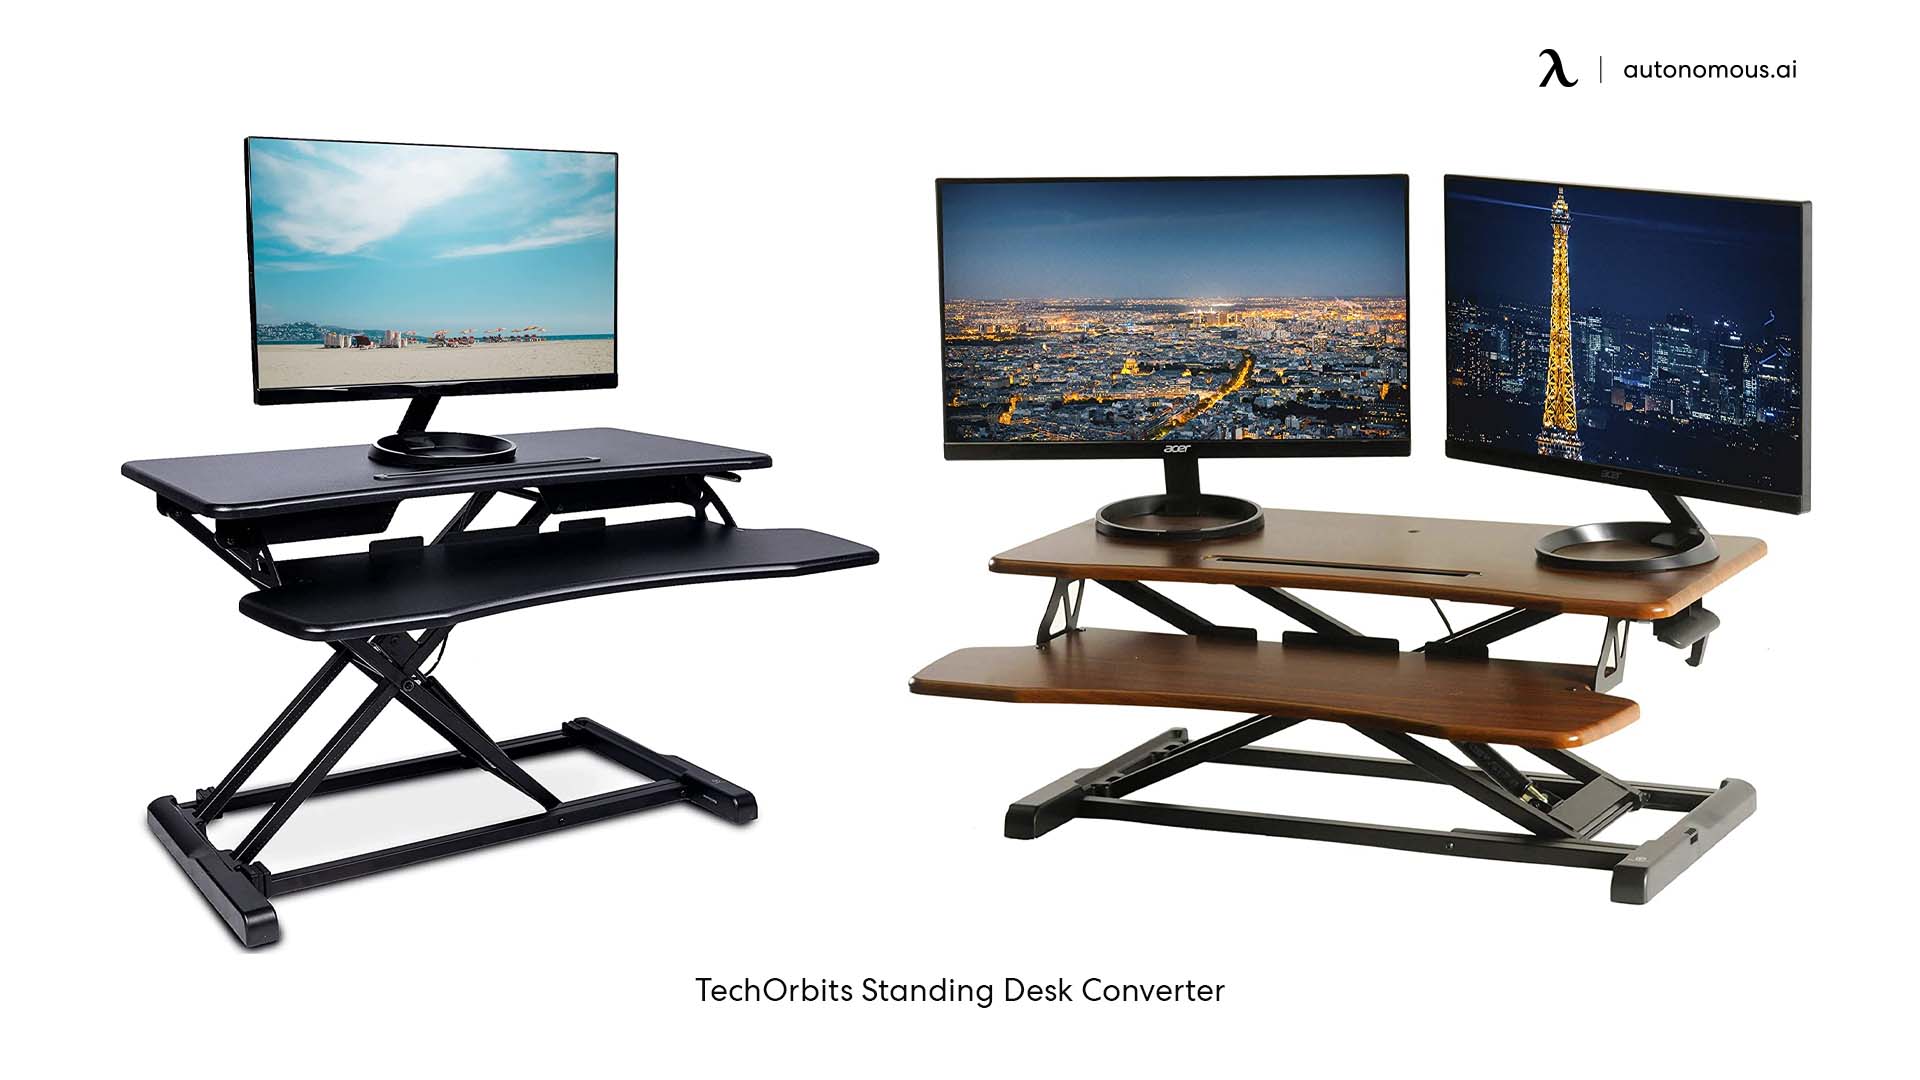 TechOrbits adjustable standing desk converter